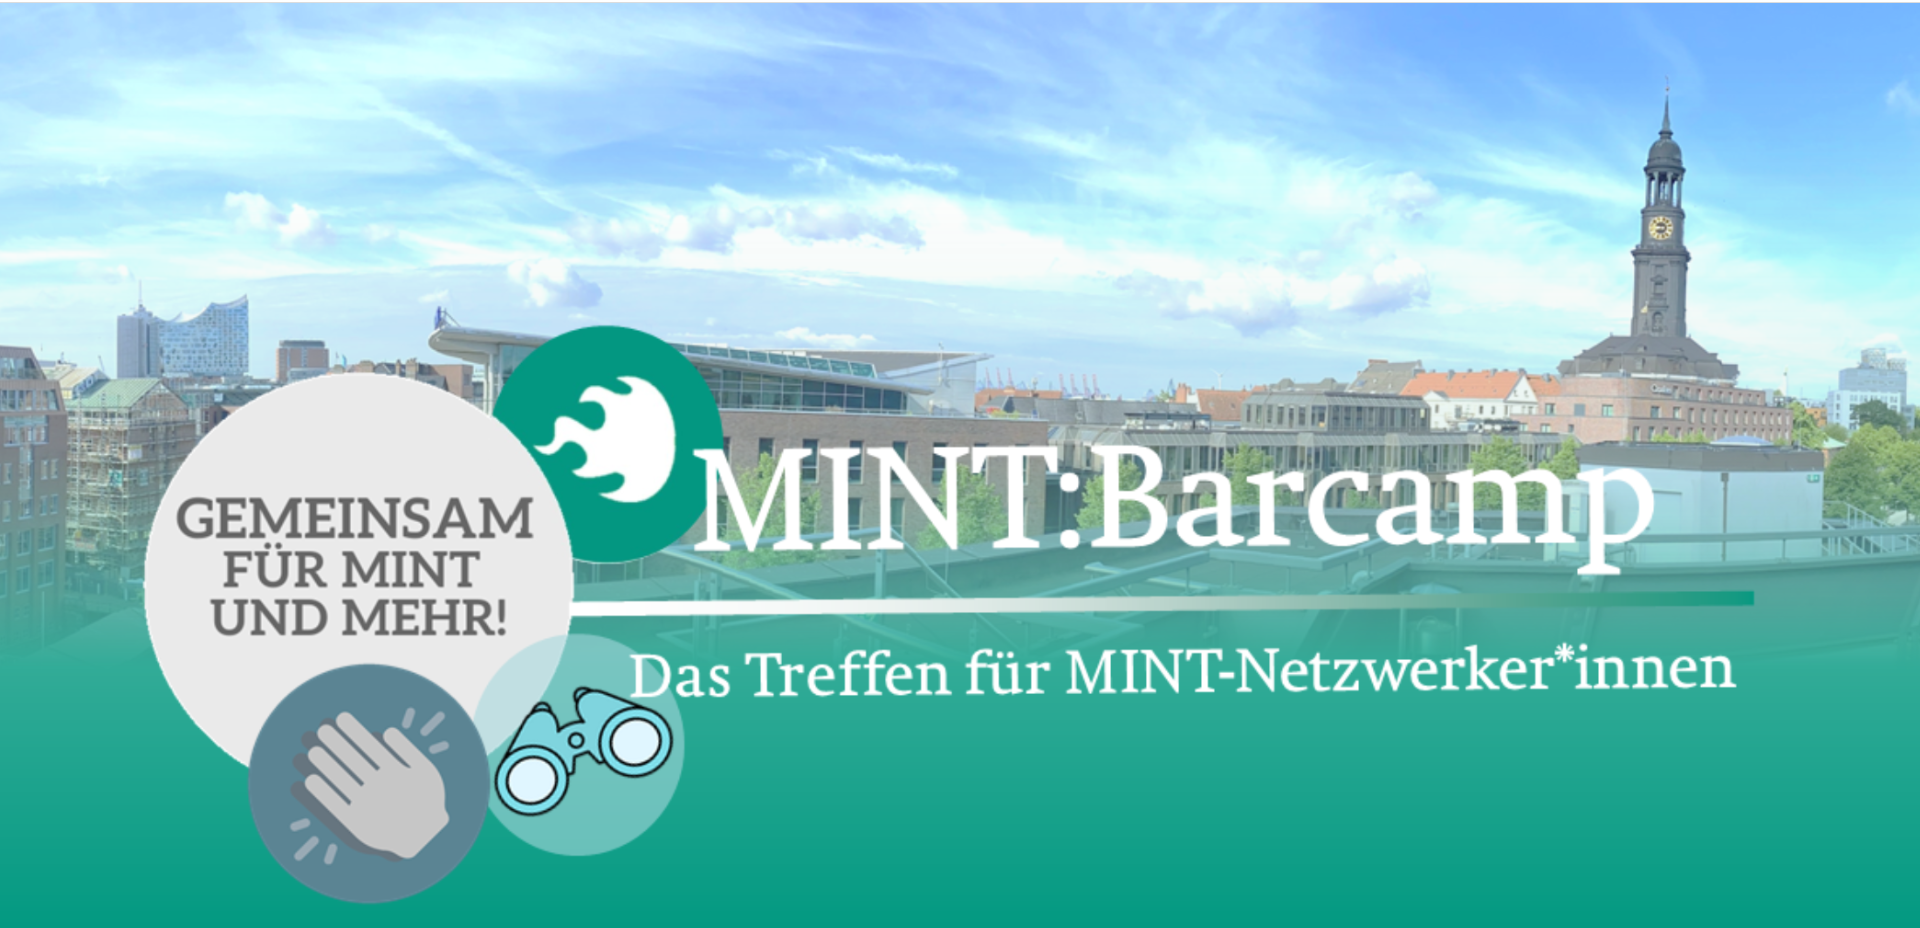 MINT: Barcamp Gemeinsam für MINT und mehr!